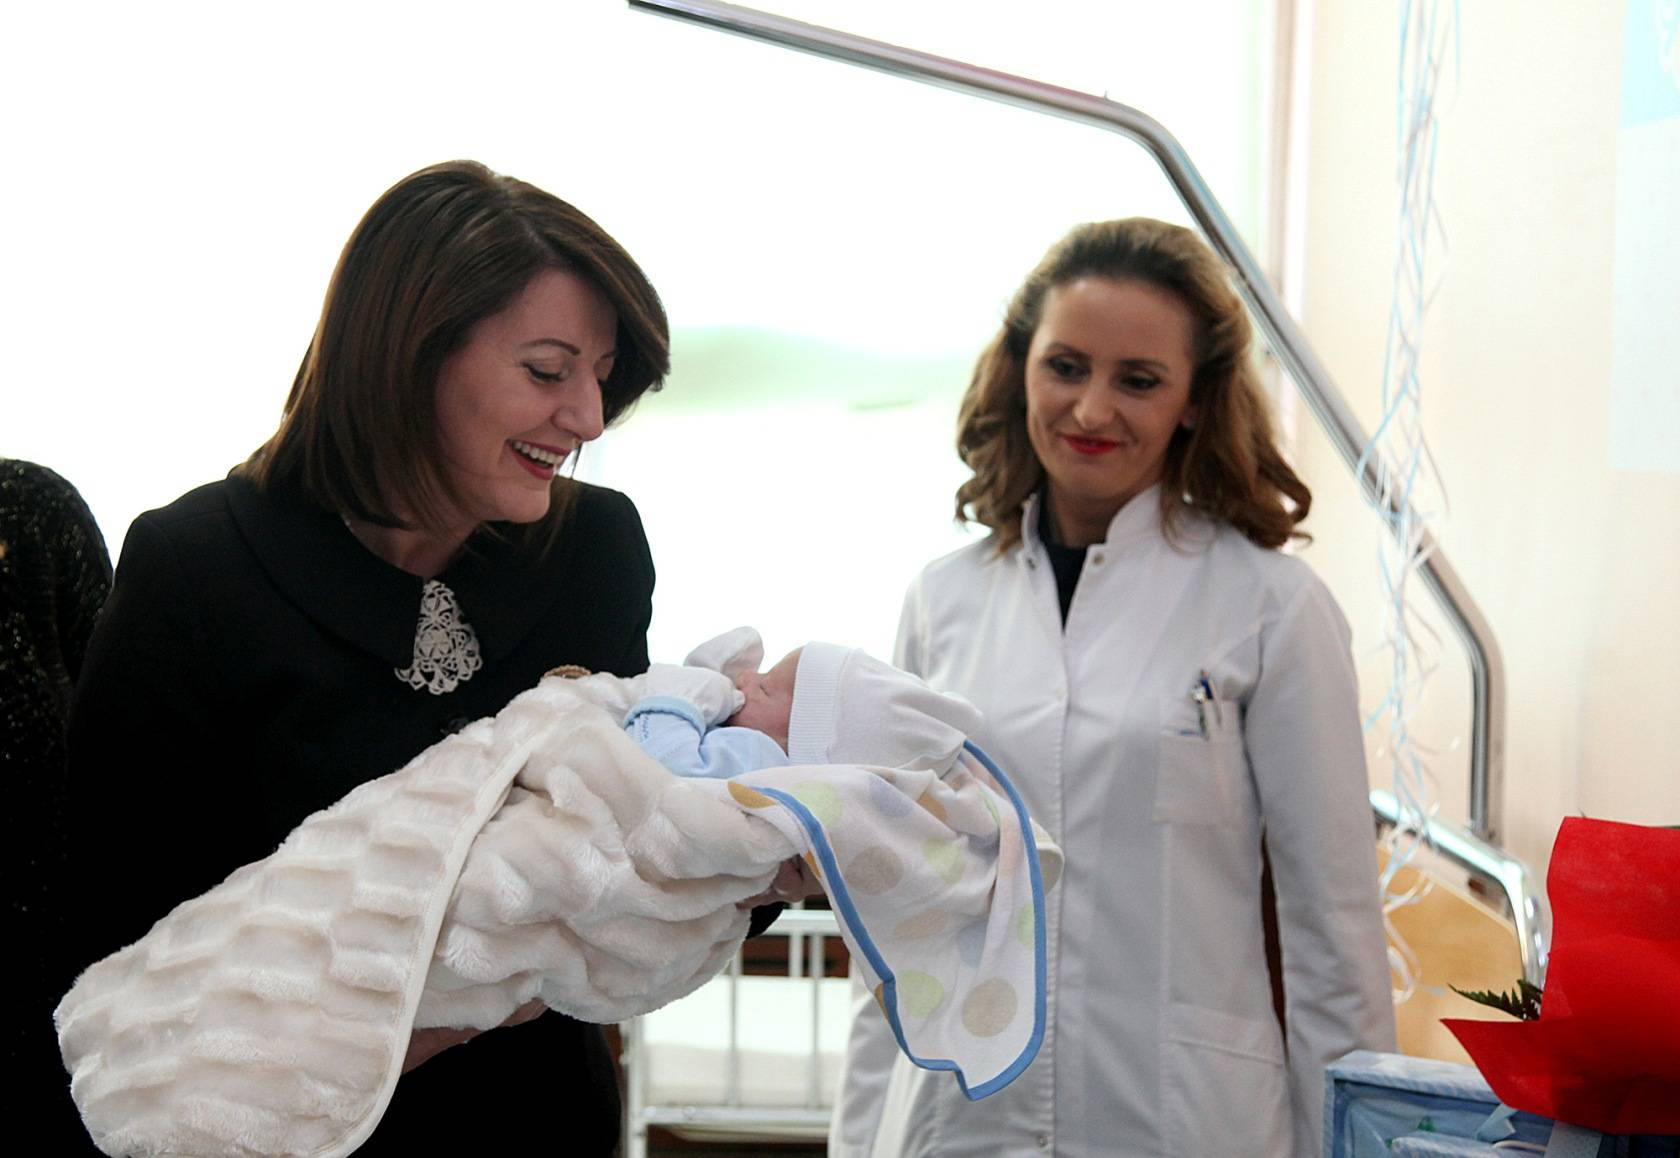 Presidentja Jahjaga vizitoi nënën qe lindi djalin e parë të 2016-së  